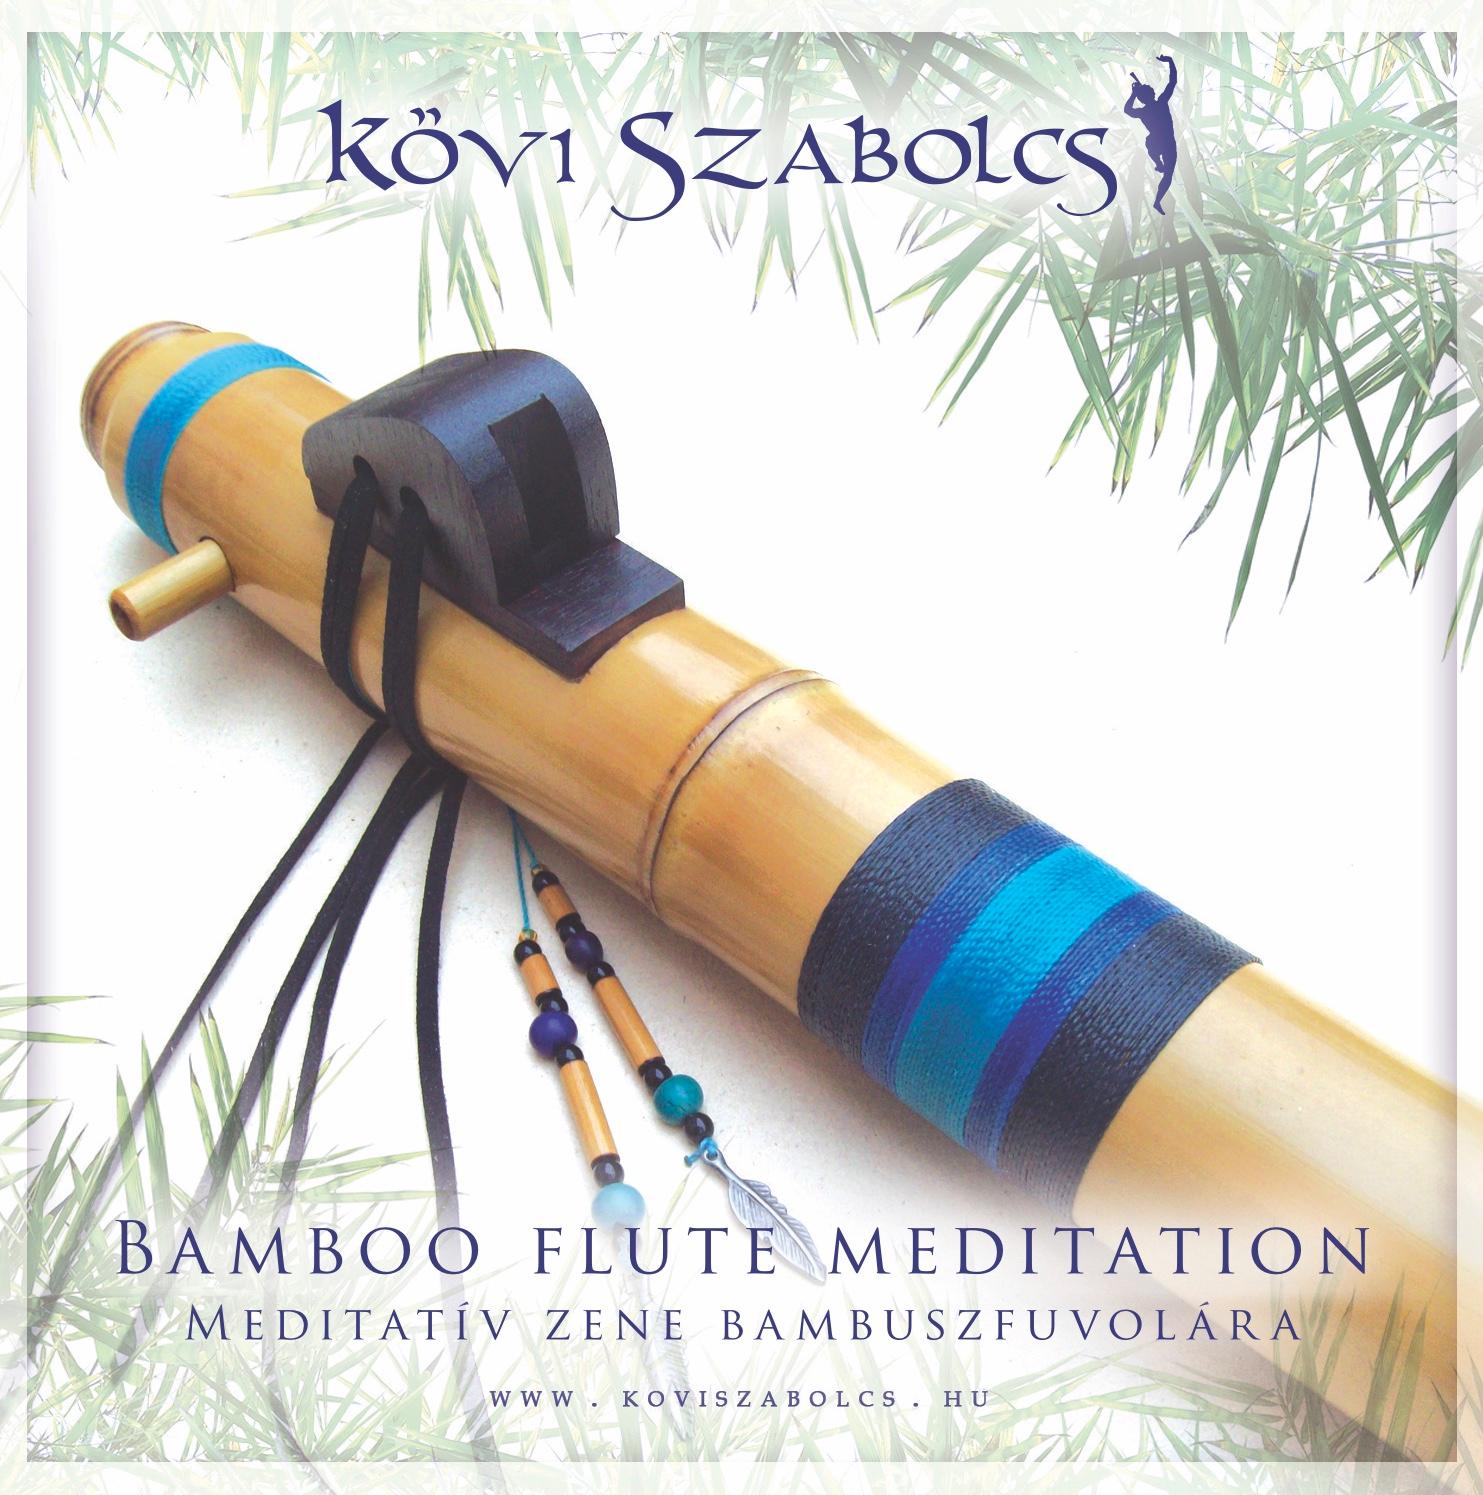 Kövi Szabolcs - Bamboo flute meditation